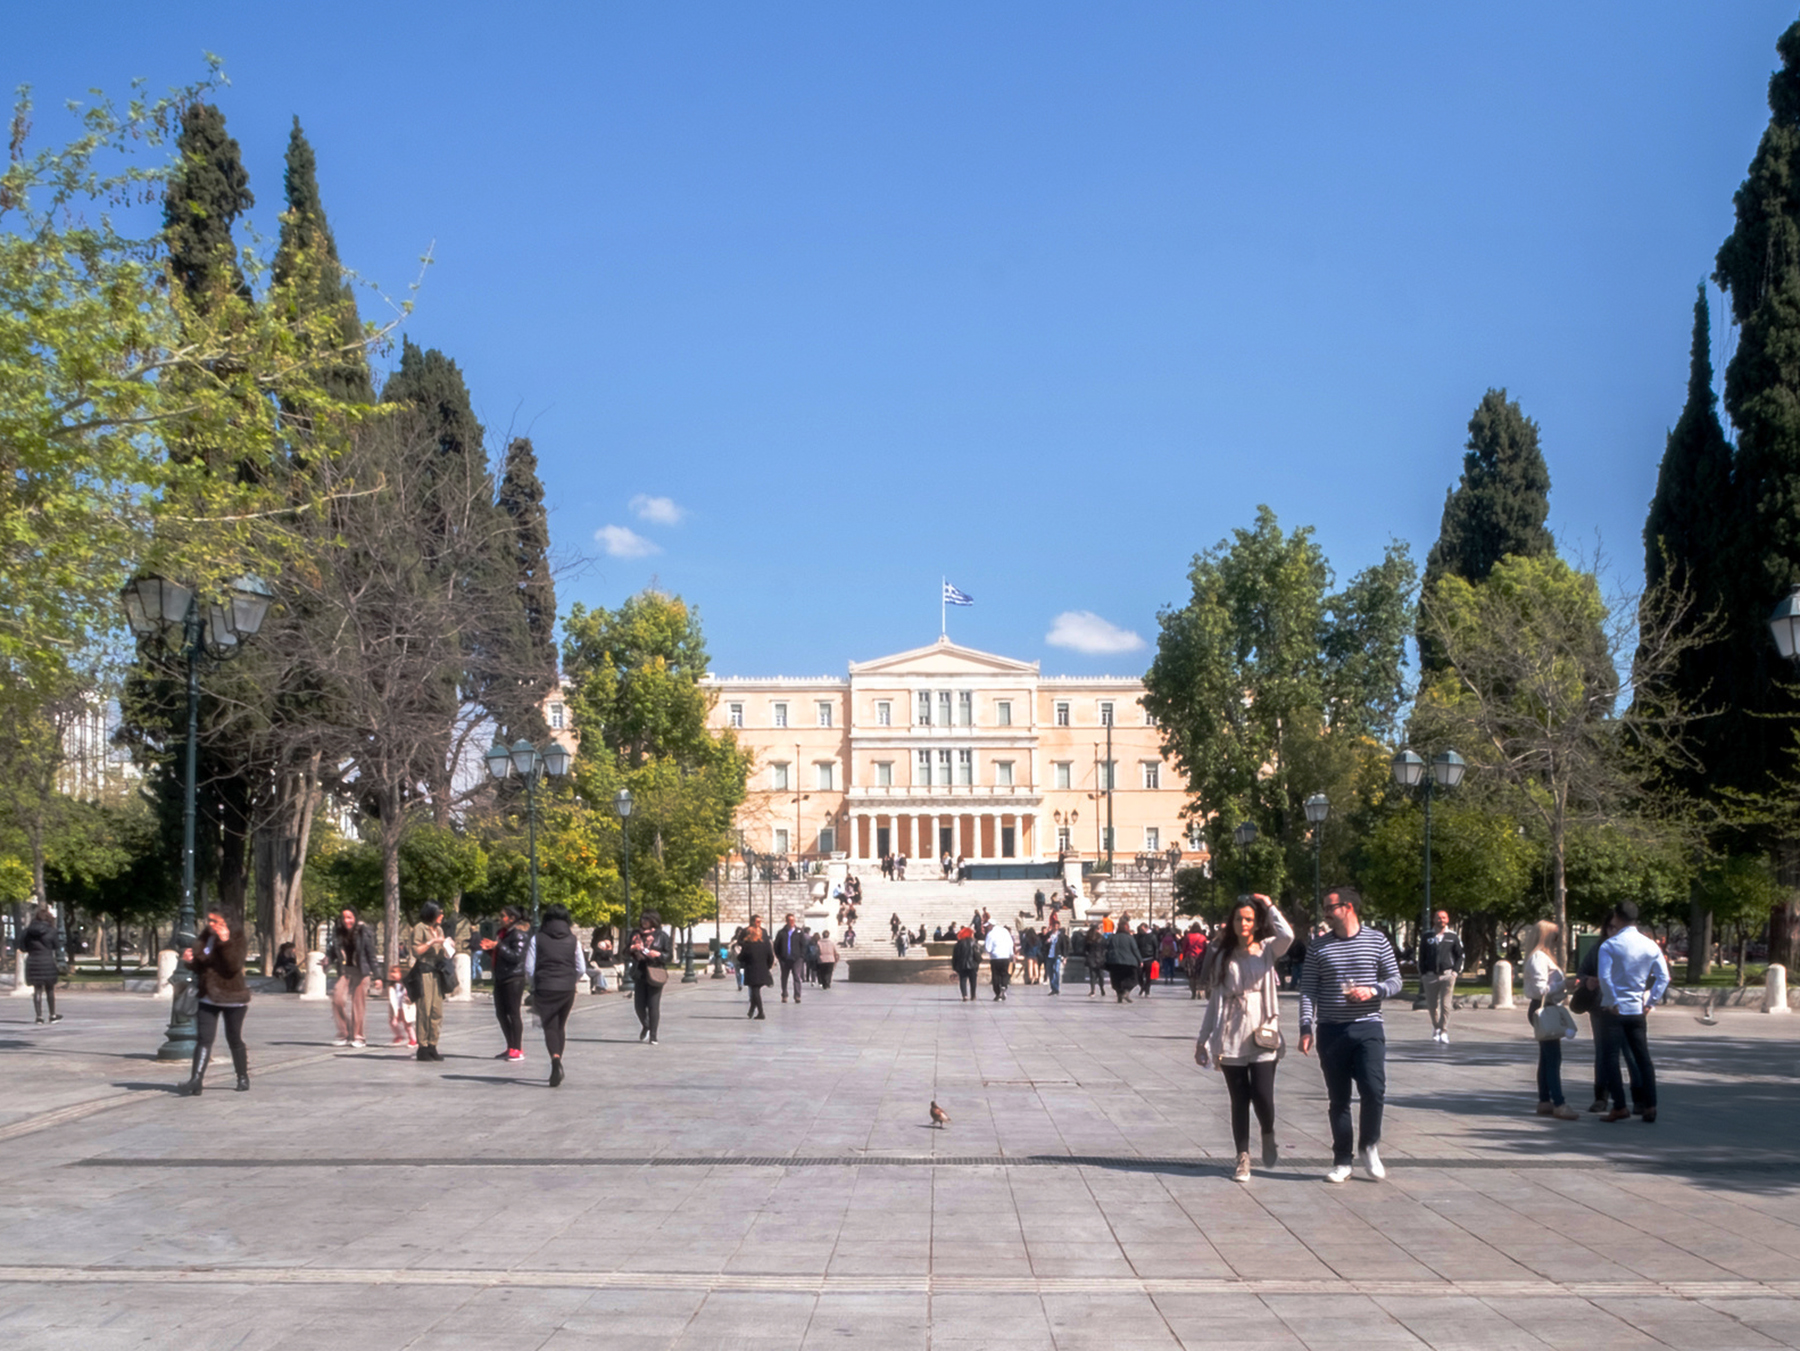 Quảng trường Hiến pháp Syntagma - Syntagma Square - Athens - Hy Lạp